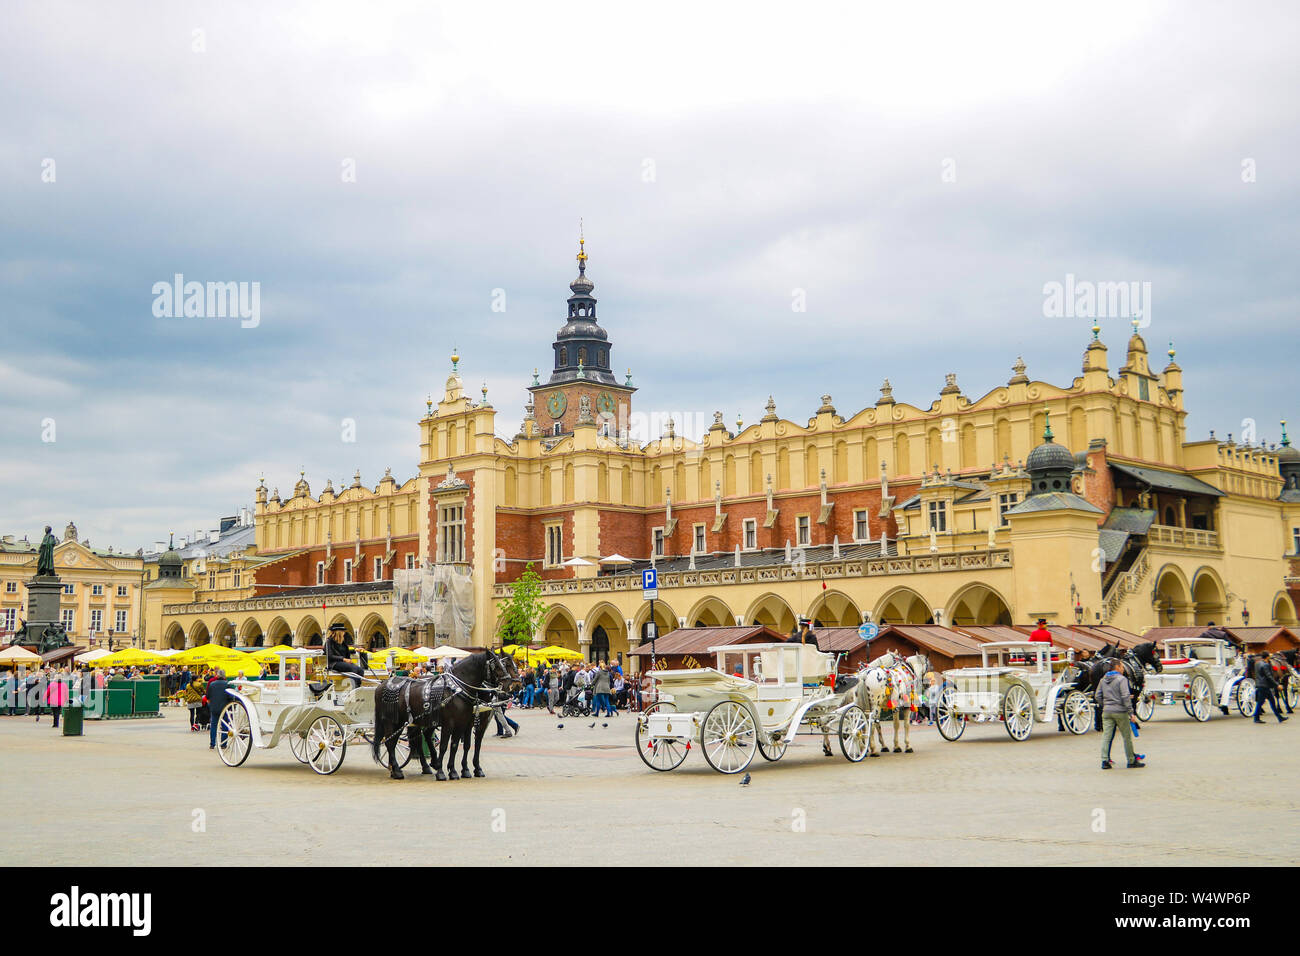 Cracovie, Pologne - 21 mai 2019 : place principale de Cracovie, Pologne. Cracovie est une ville historique avec de nombreux monuments Banque D'Images